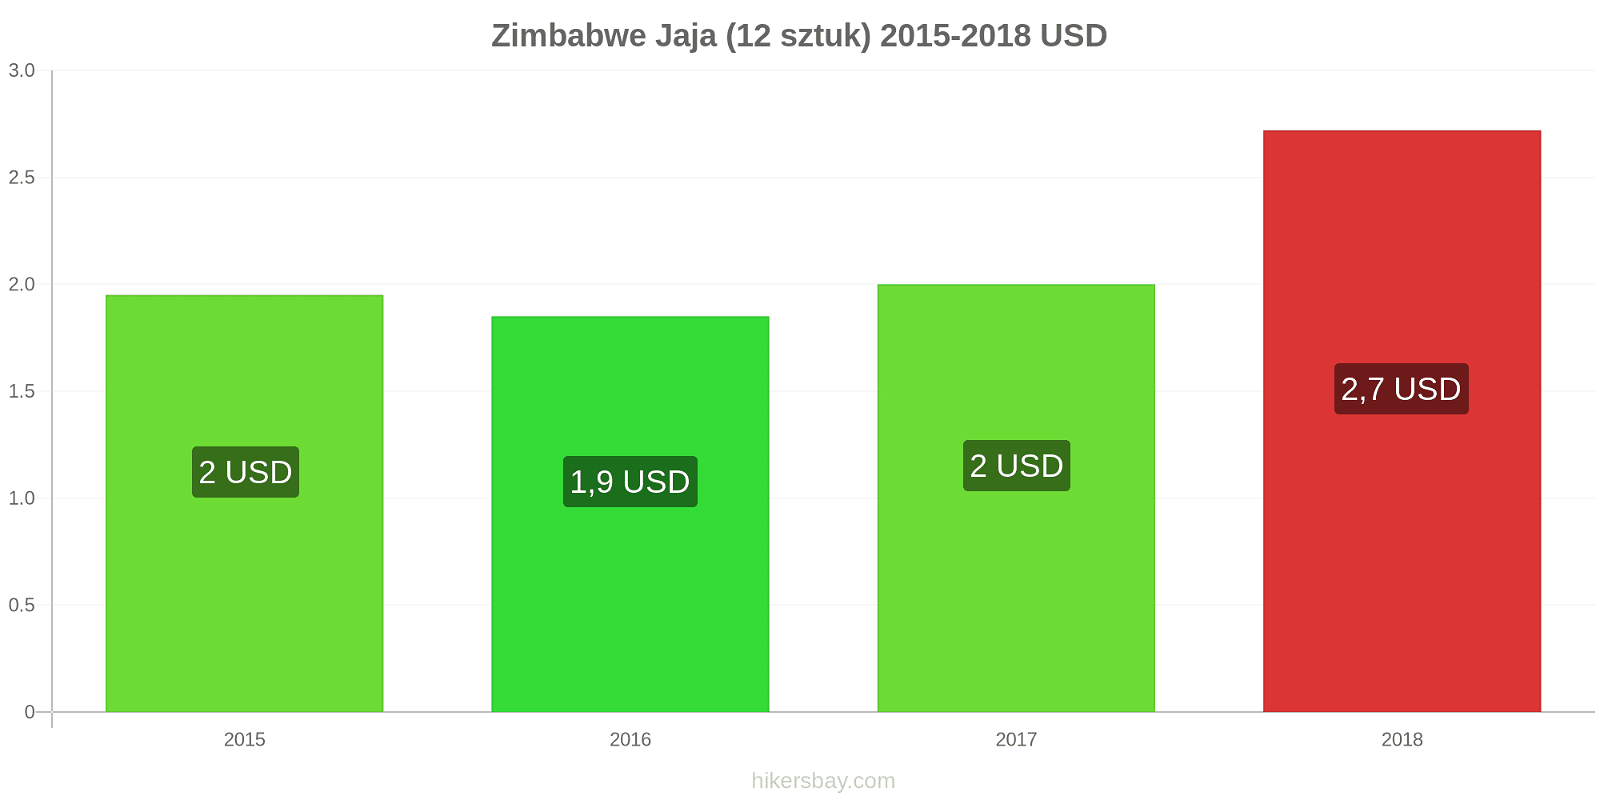 Zimbabwe zmiany cen Jaja 12 sztuk hikersbay.com